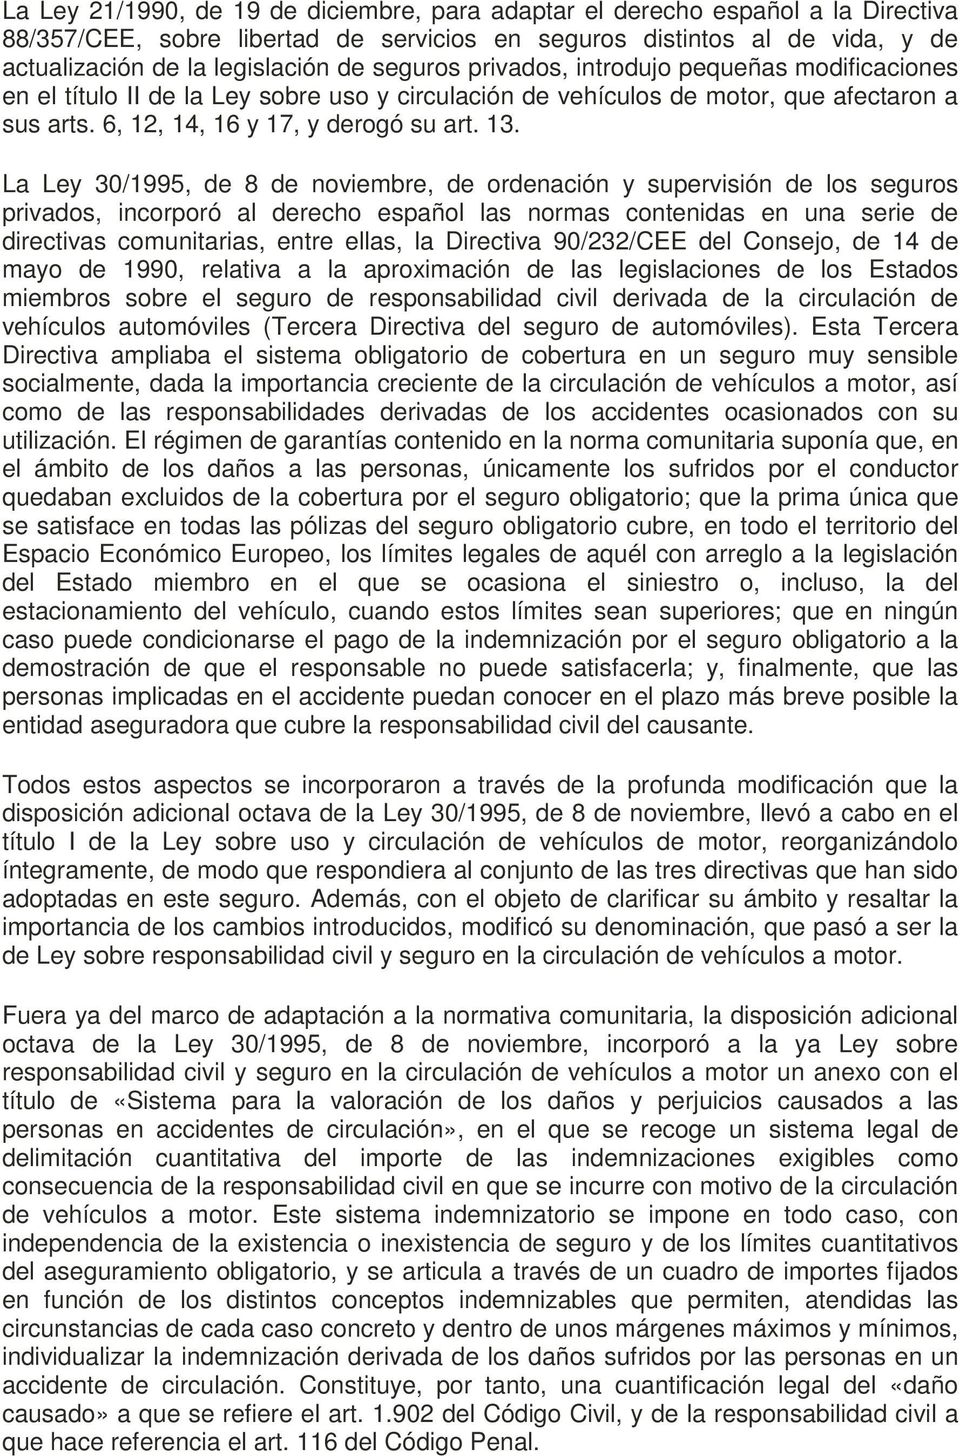 La Ley 30/1995, de 8 de noviembre, de ordenación y supervisión de los seguros privados, incorporó al derecho español las normas contenidas en una serie de directivas comunitarias, entre ellas, la